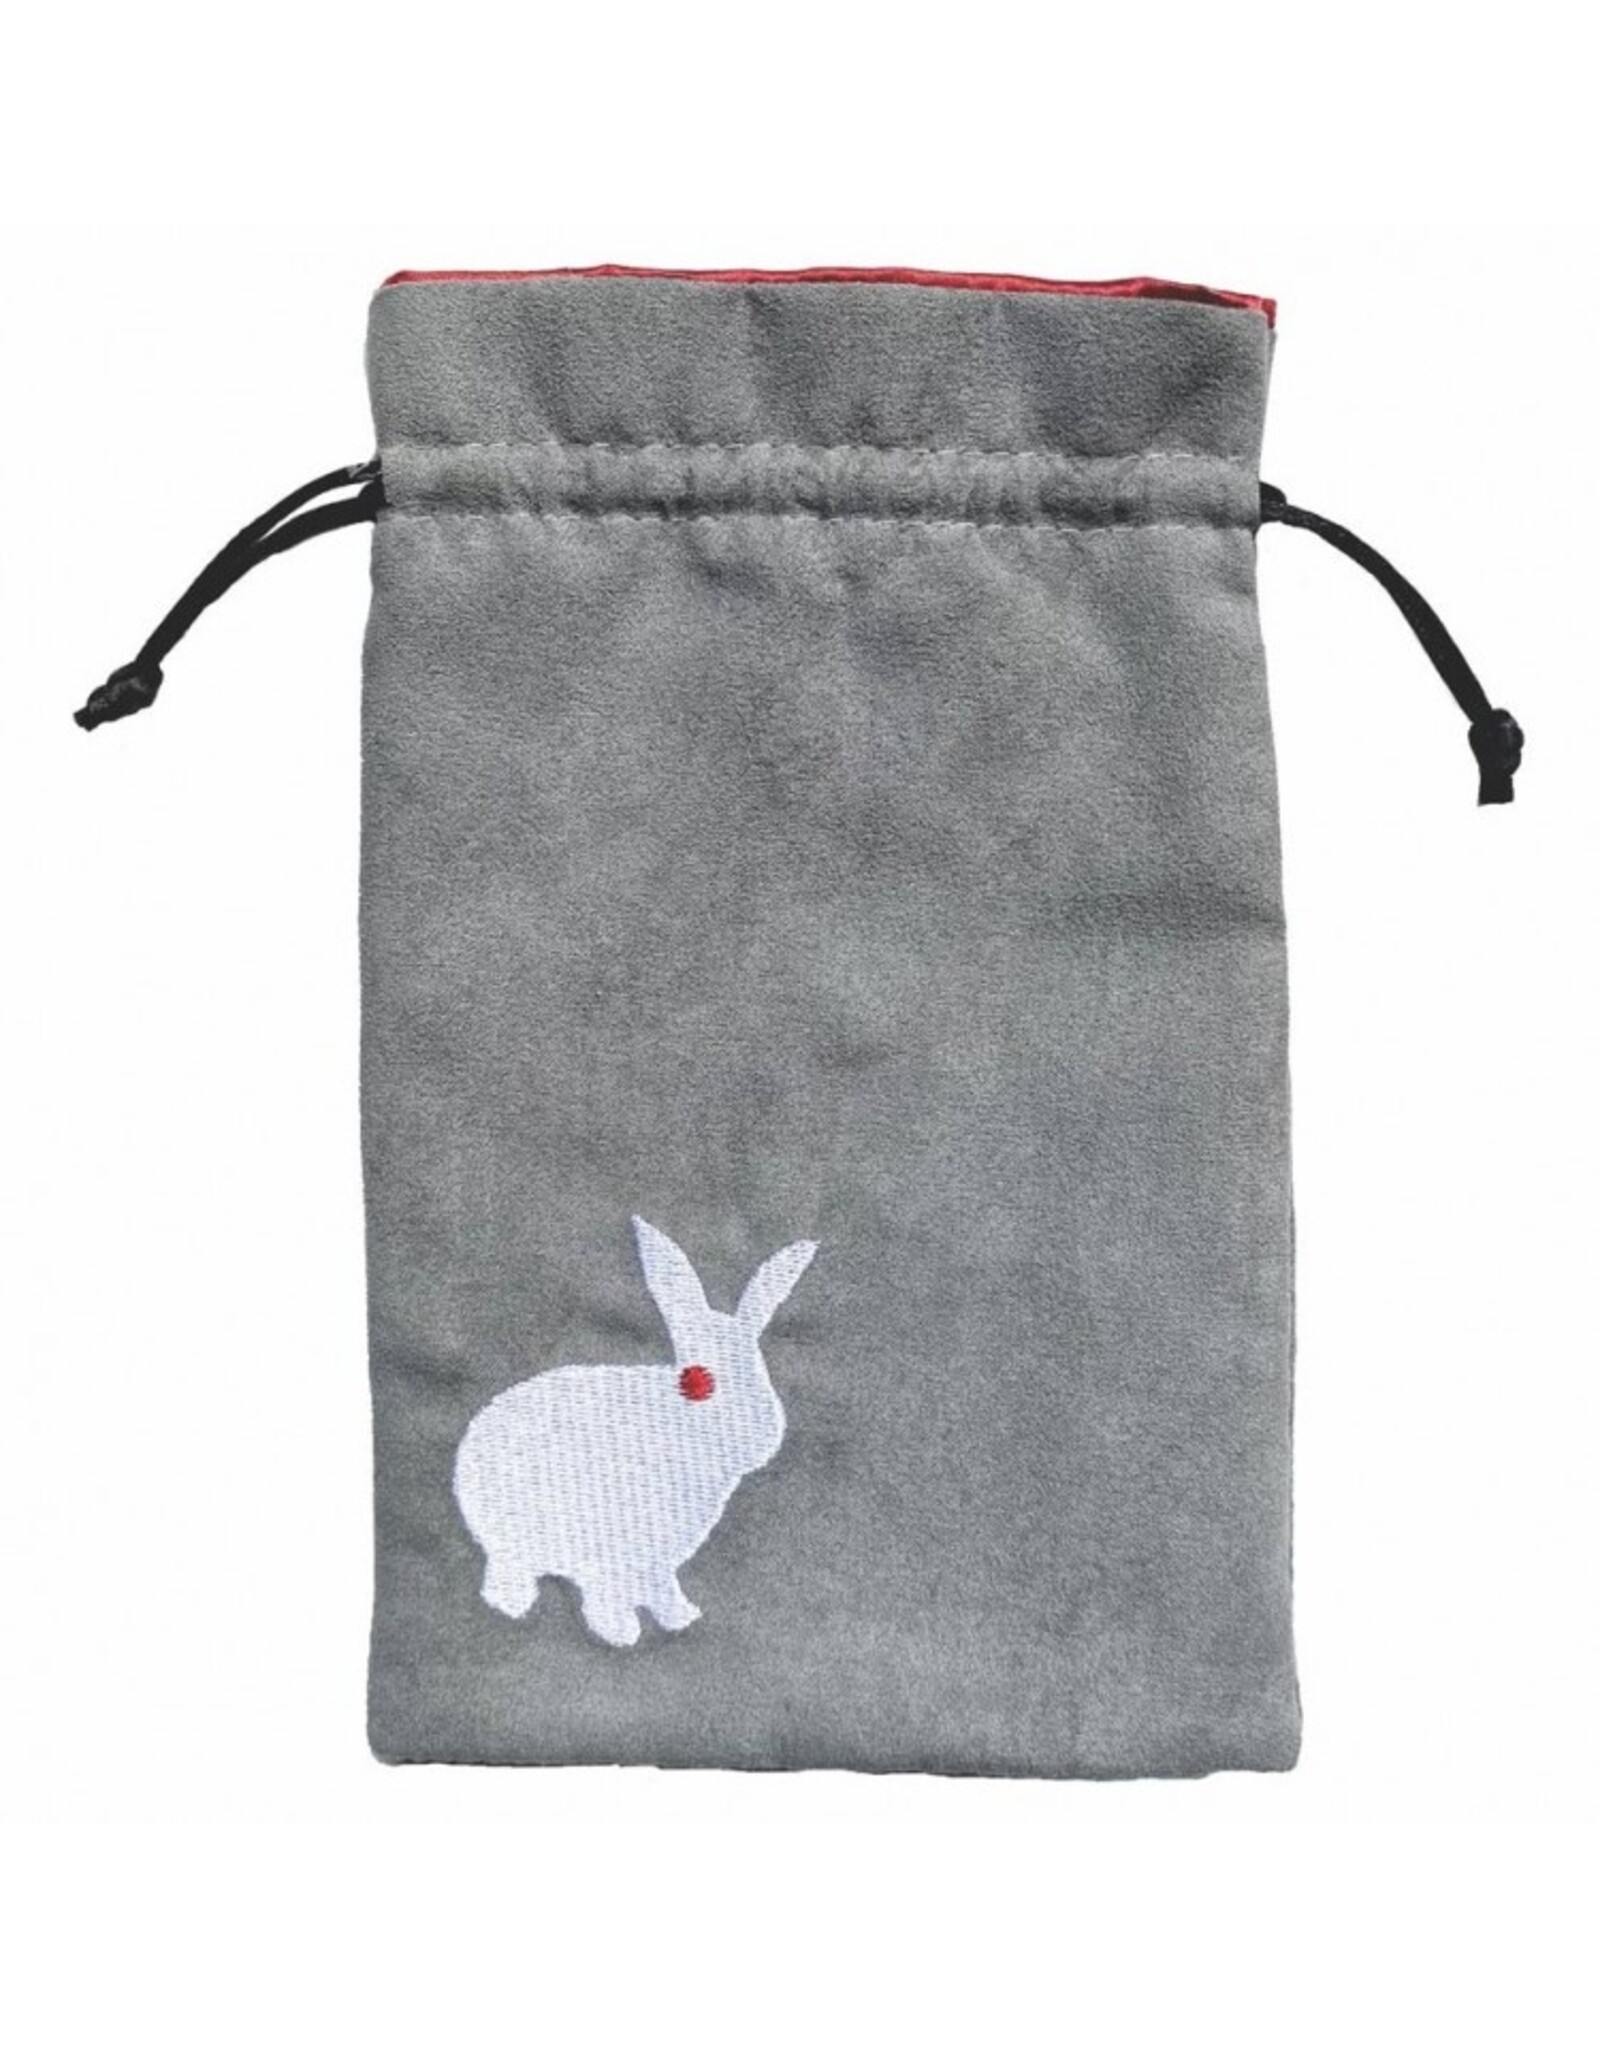 Black Oak Workshop Dice Bag: Evil Rabbit